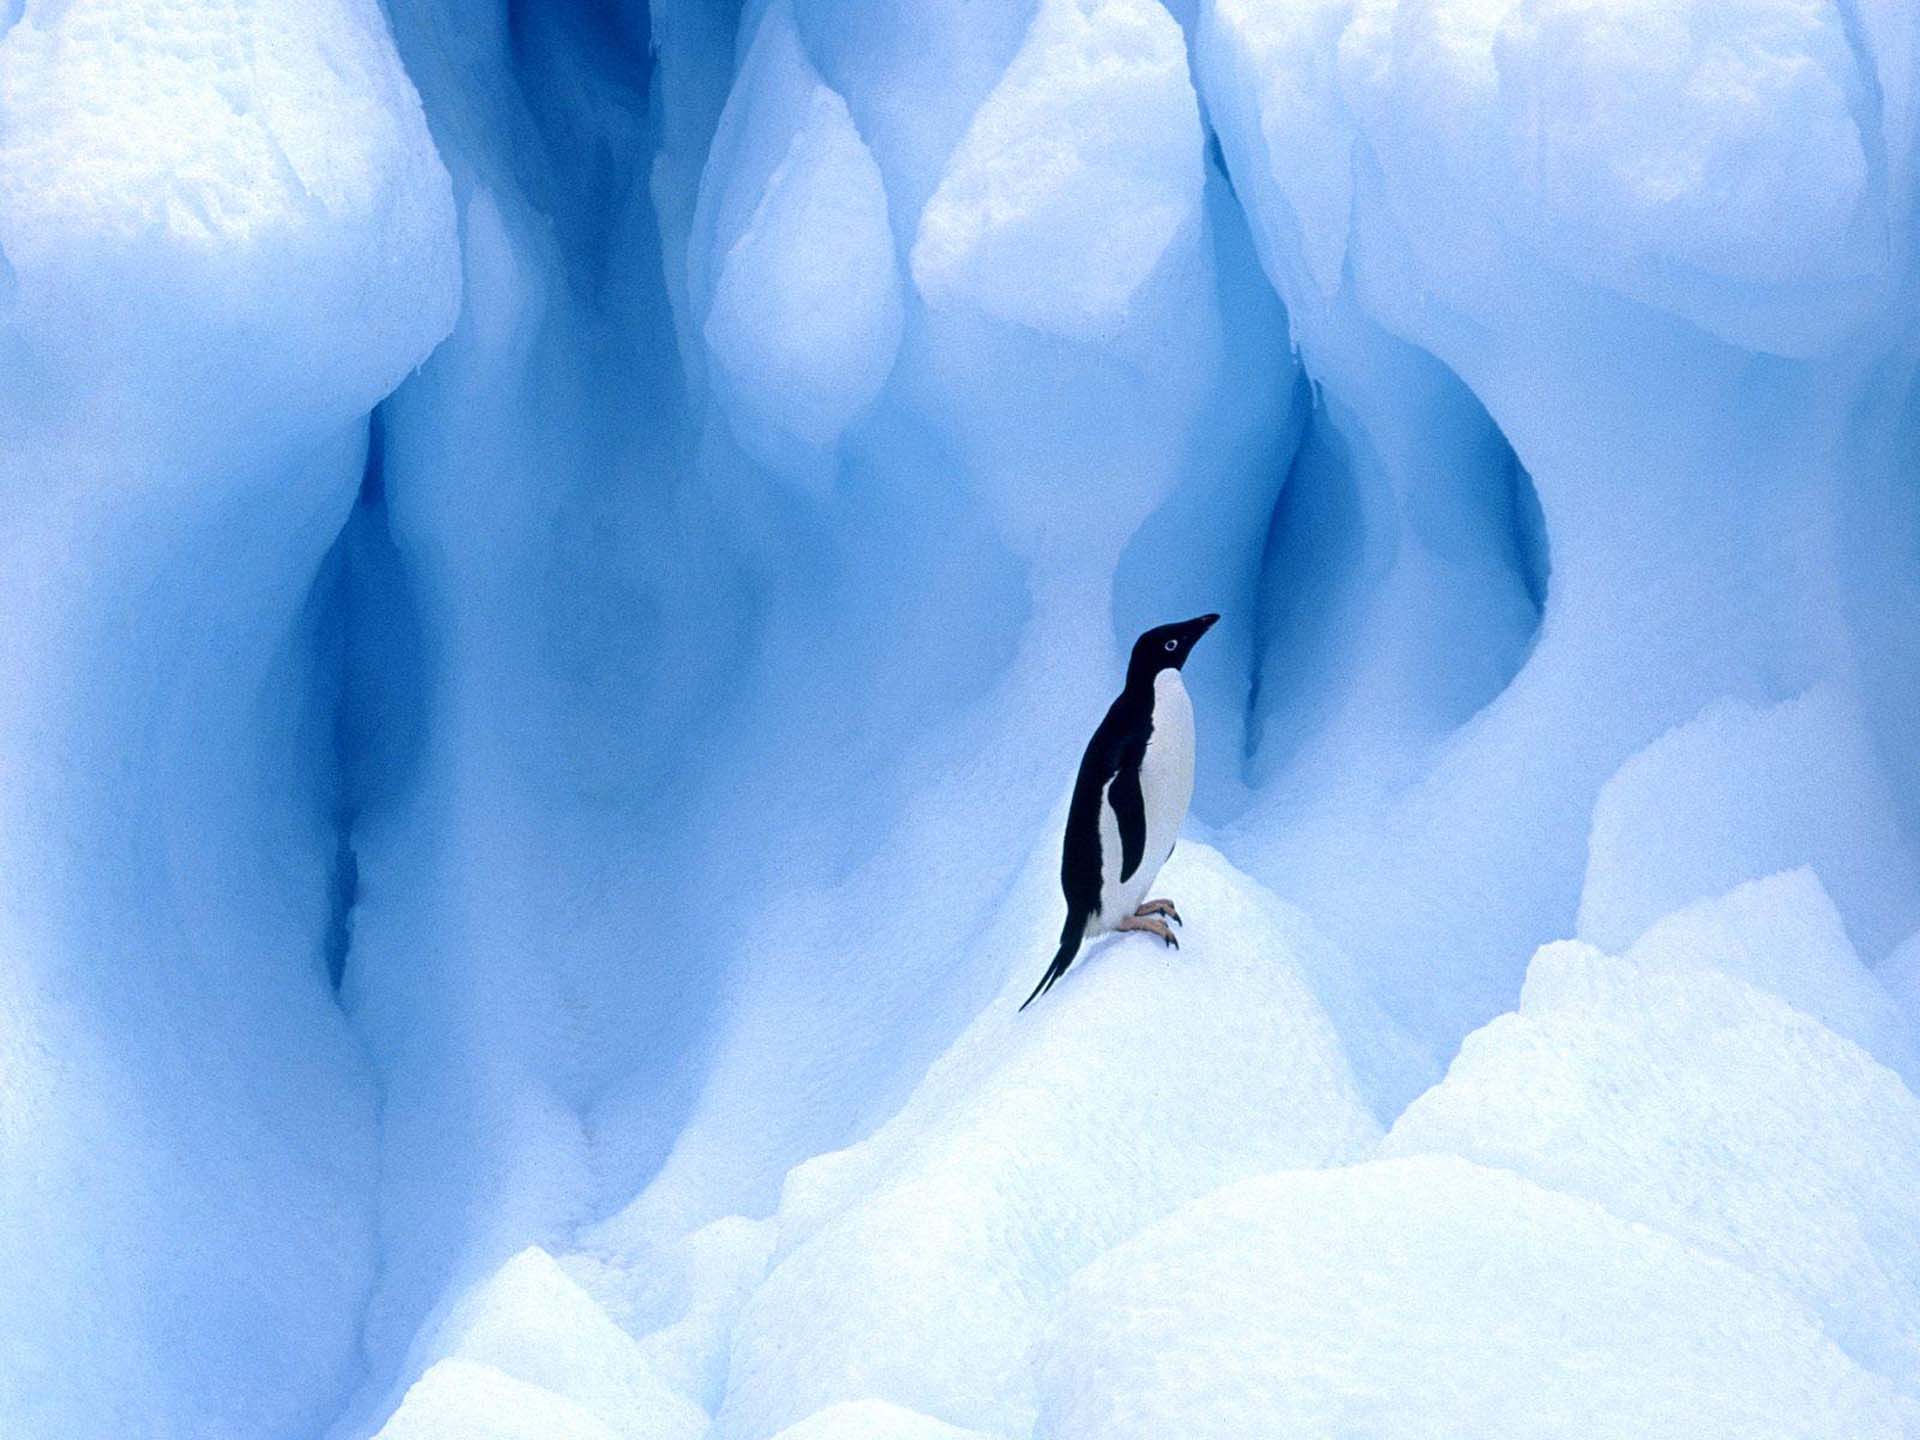 Скачать обои бесплатно Животные, Птицы, Ледник, Пингвин, Лёд, Пингвин Адели картинка на рабочий стол ПК